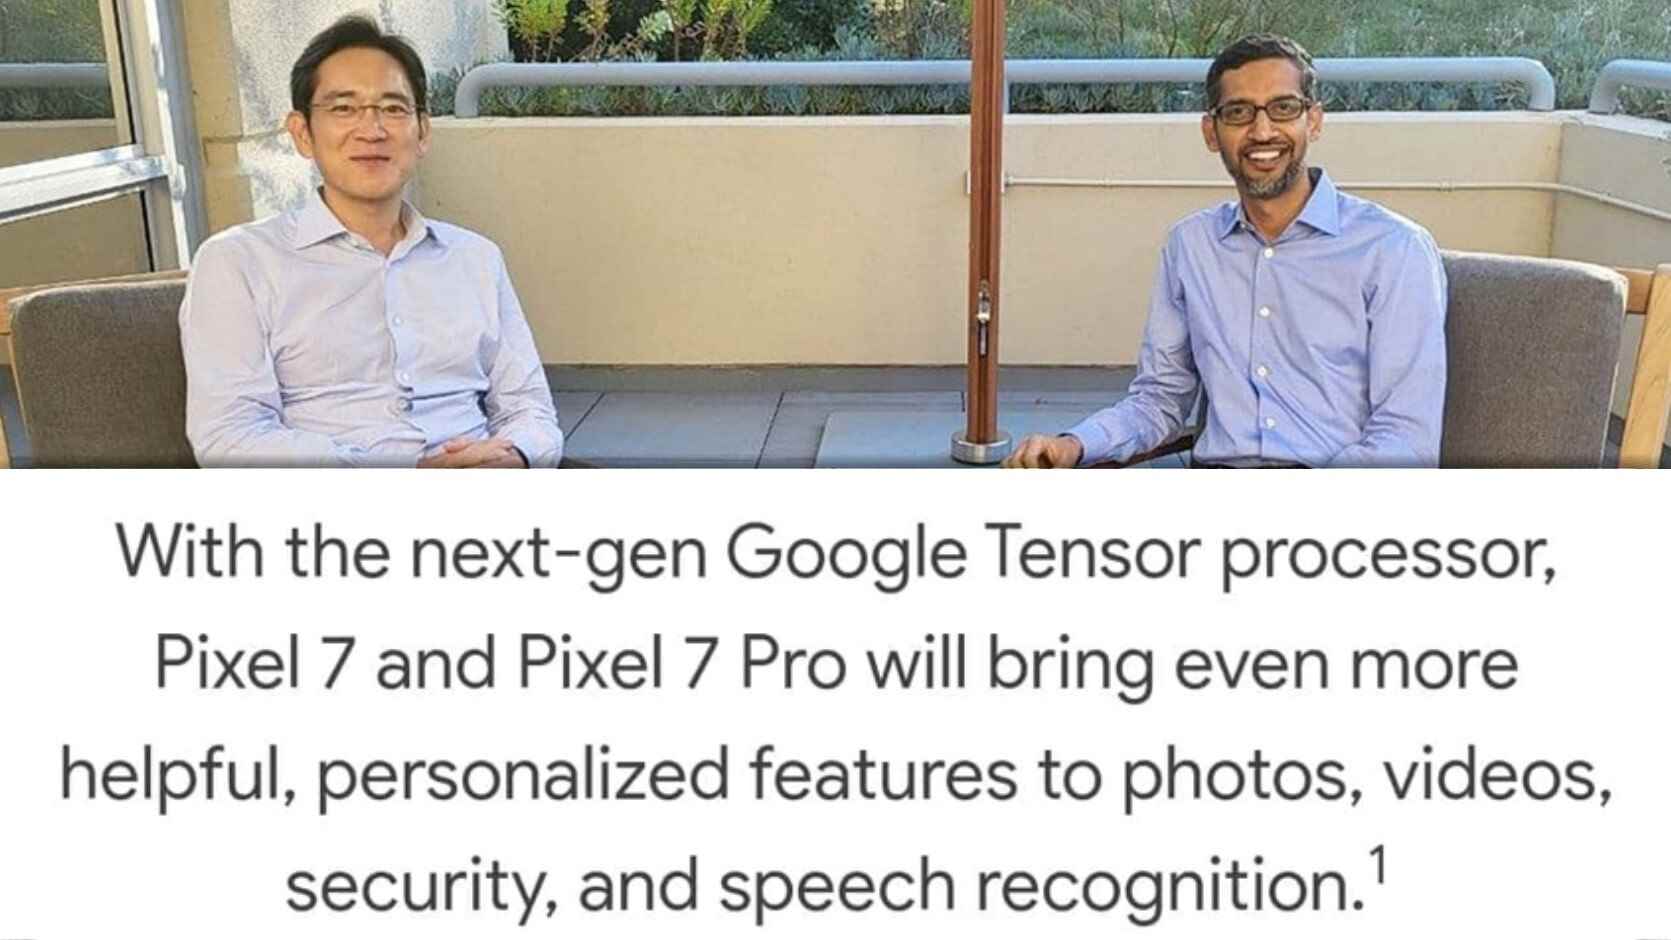 Tensor G2 wird dank seiner KI-Fähigkeiten ein besonderer Chip sein.  Aber was ist mit roher Kraft?  - Pixel 7 und Tensor G2 - Qualcomm überlassen, um mit Samsung zu kuscheln - Googles größter Fehler?